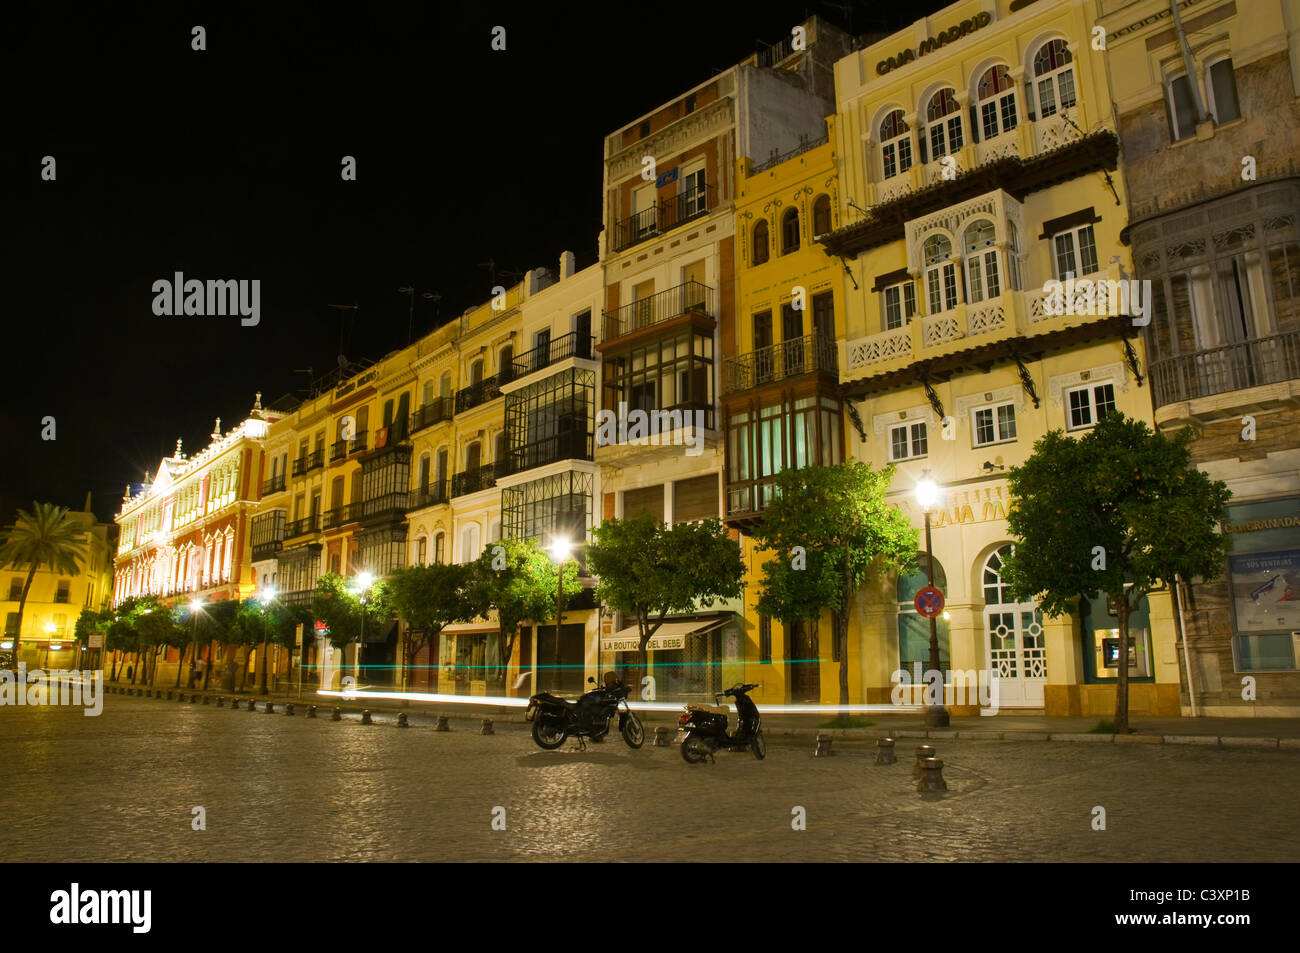 Seville, Spain, Night street scene in Plaza de San Francisco. Stock Photo